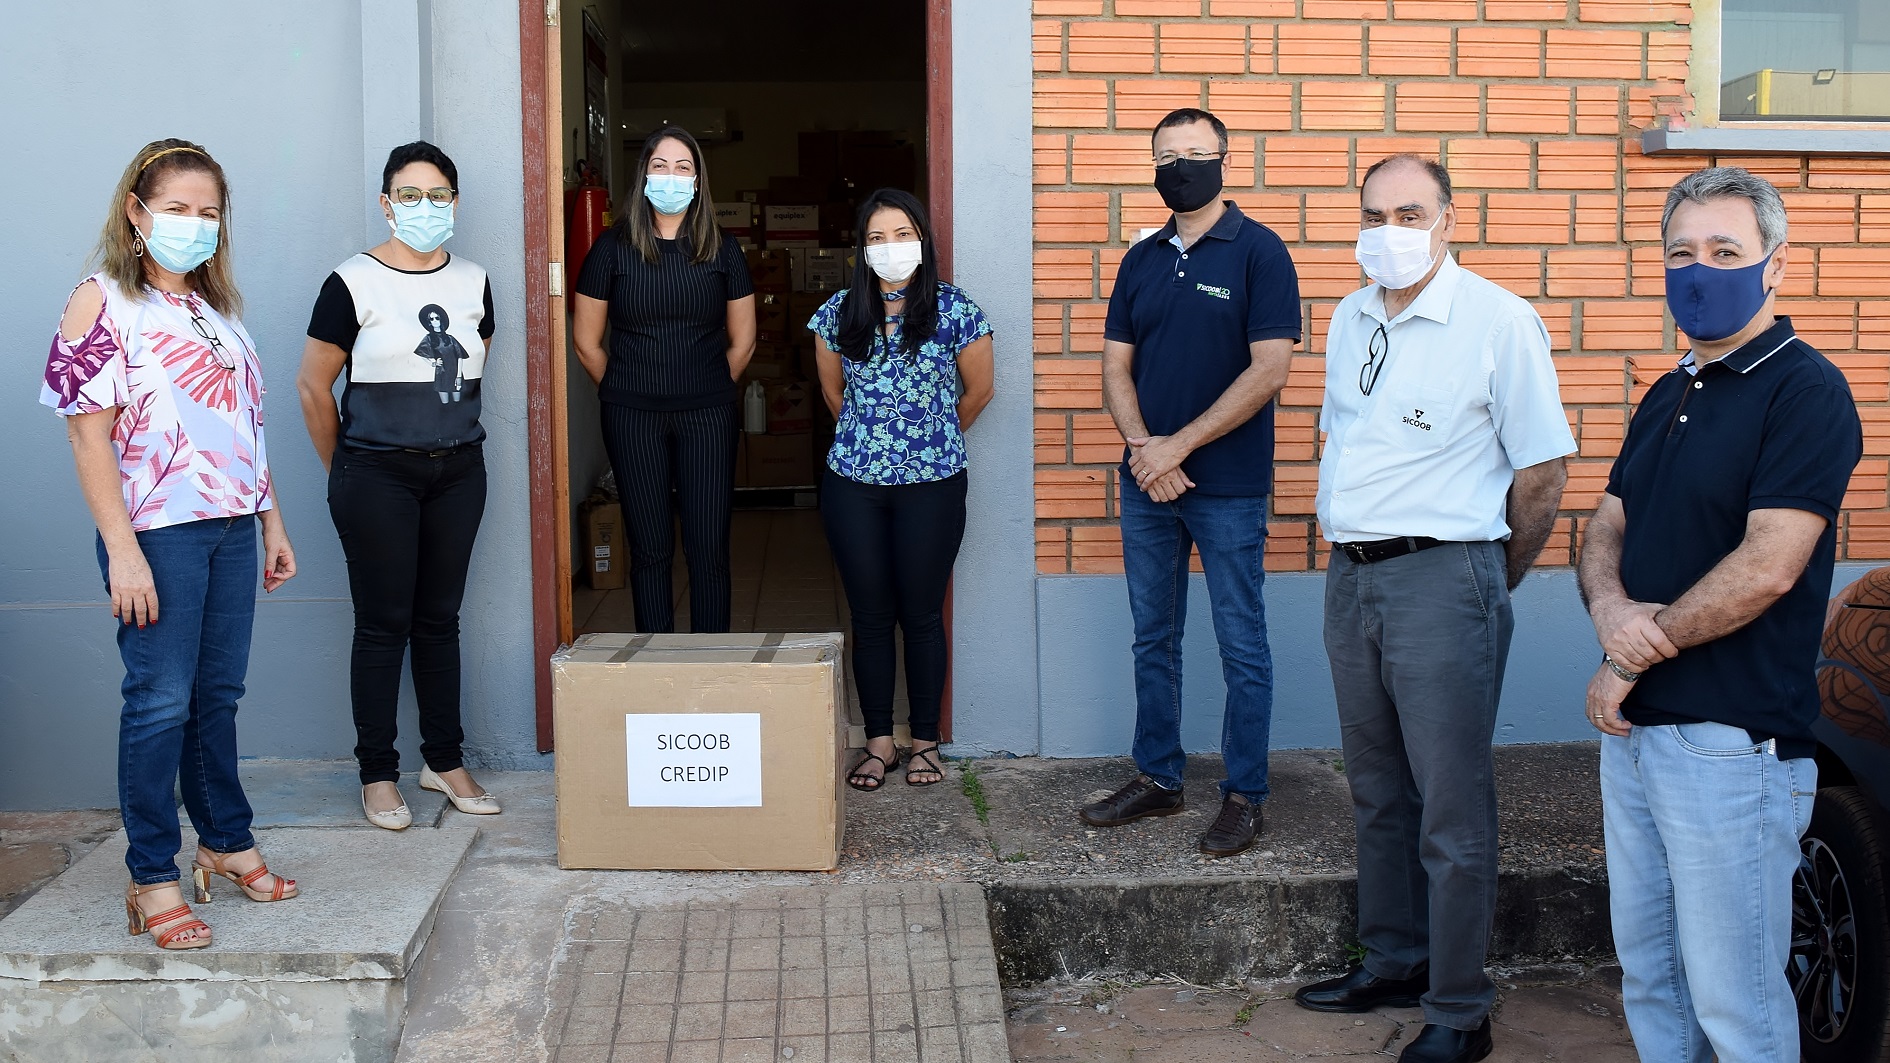 Entrega dos medicamentos no Hospital Municipal Ana Neta, em Pimenta Bueno, Rondônia.